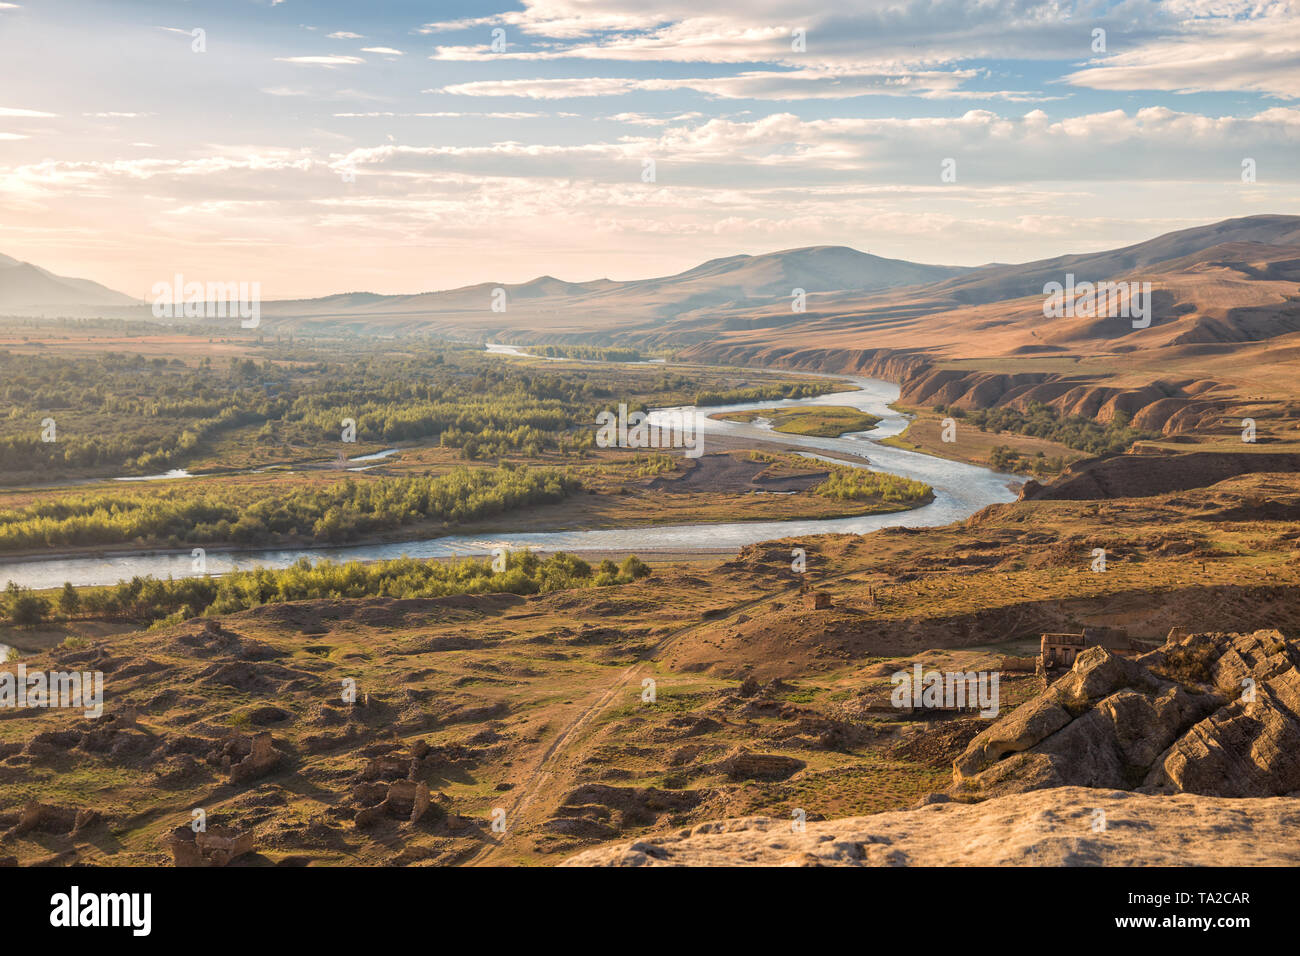 Beau paysage dans la soirée la lumière du soleil. Mtkvari River sur l'arrière-plan des montagnes du Caucase, sur les rives de la rivière ruines d'une cité médiévale Banque D'Images